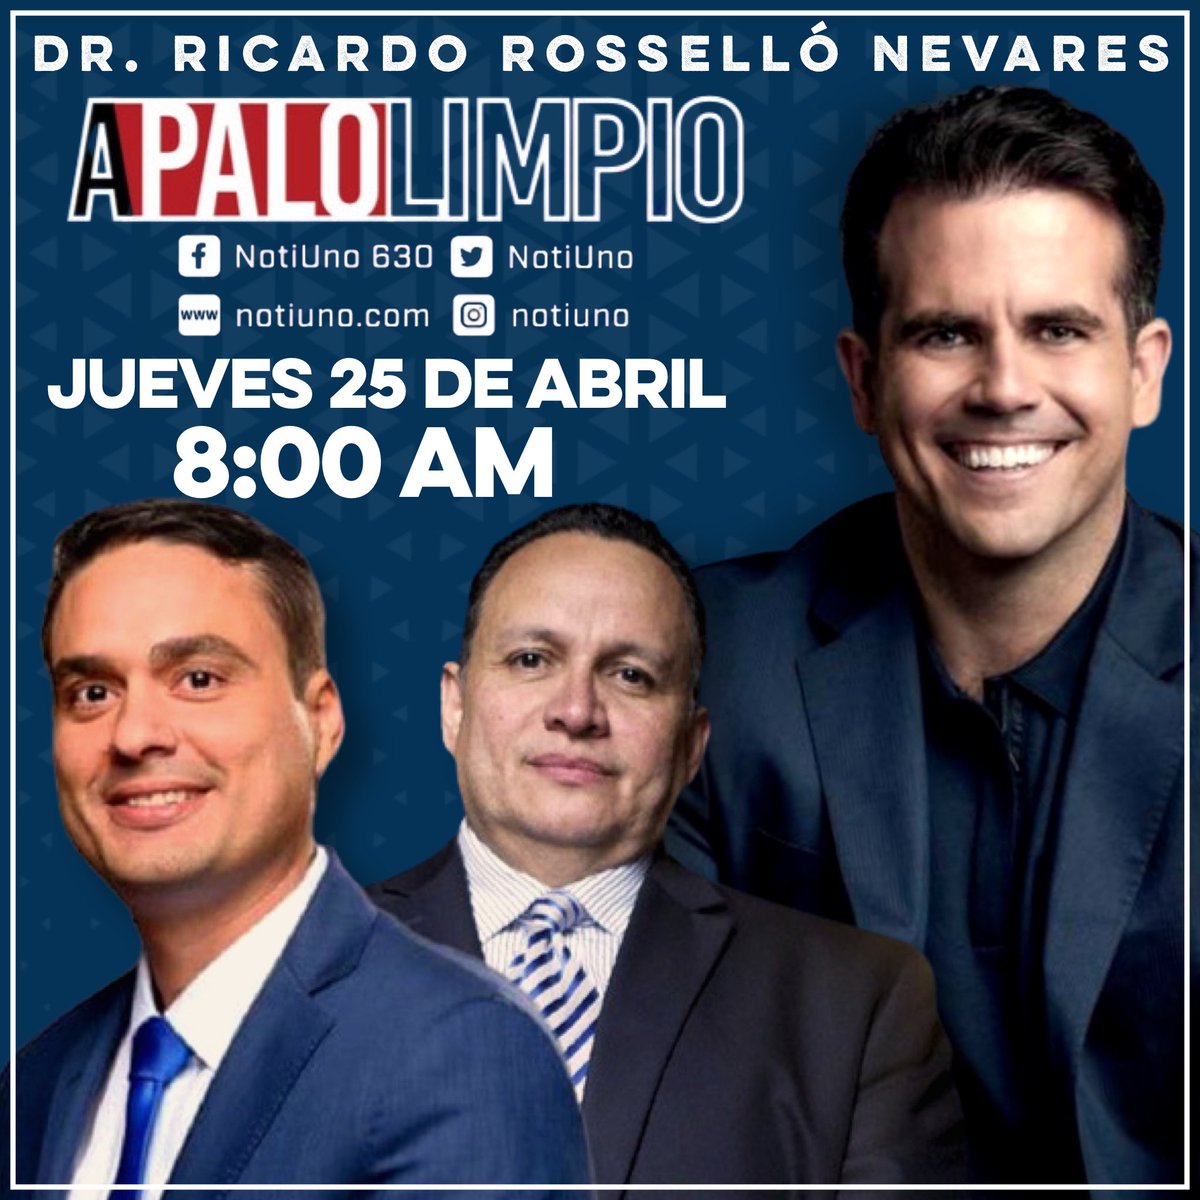 ¡Este Jueves! Nuestro Delegado Congresional y Ex Gobernador de Puerto Rico el Dr. @RicardoRossello estará en vivo en el programa A Palo Limpio con @RamonRosarioEsq e @ivanantonio2016 por @NotiUno a las 8:00AM. #NuestraCausaEsPoderosa